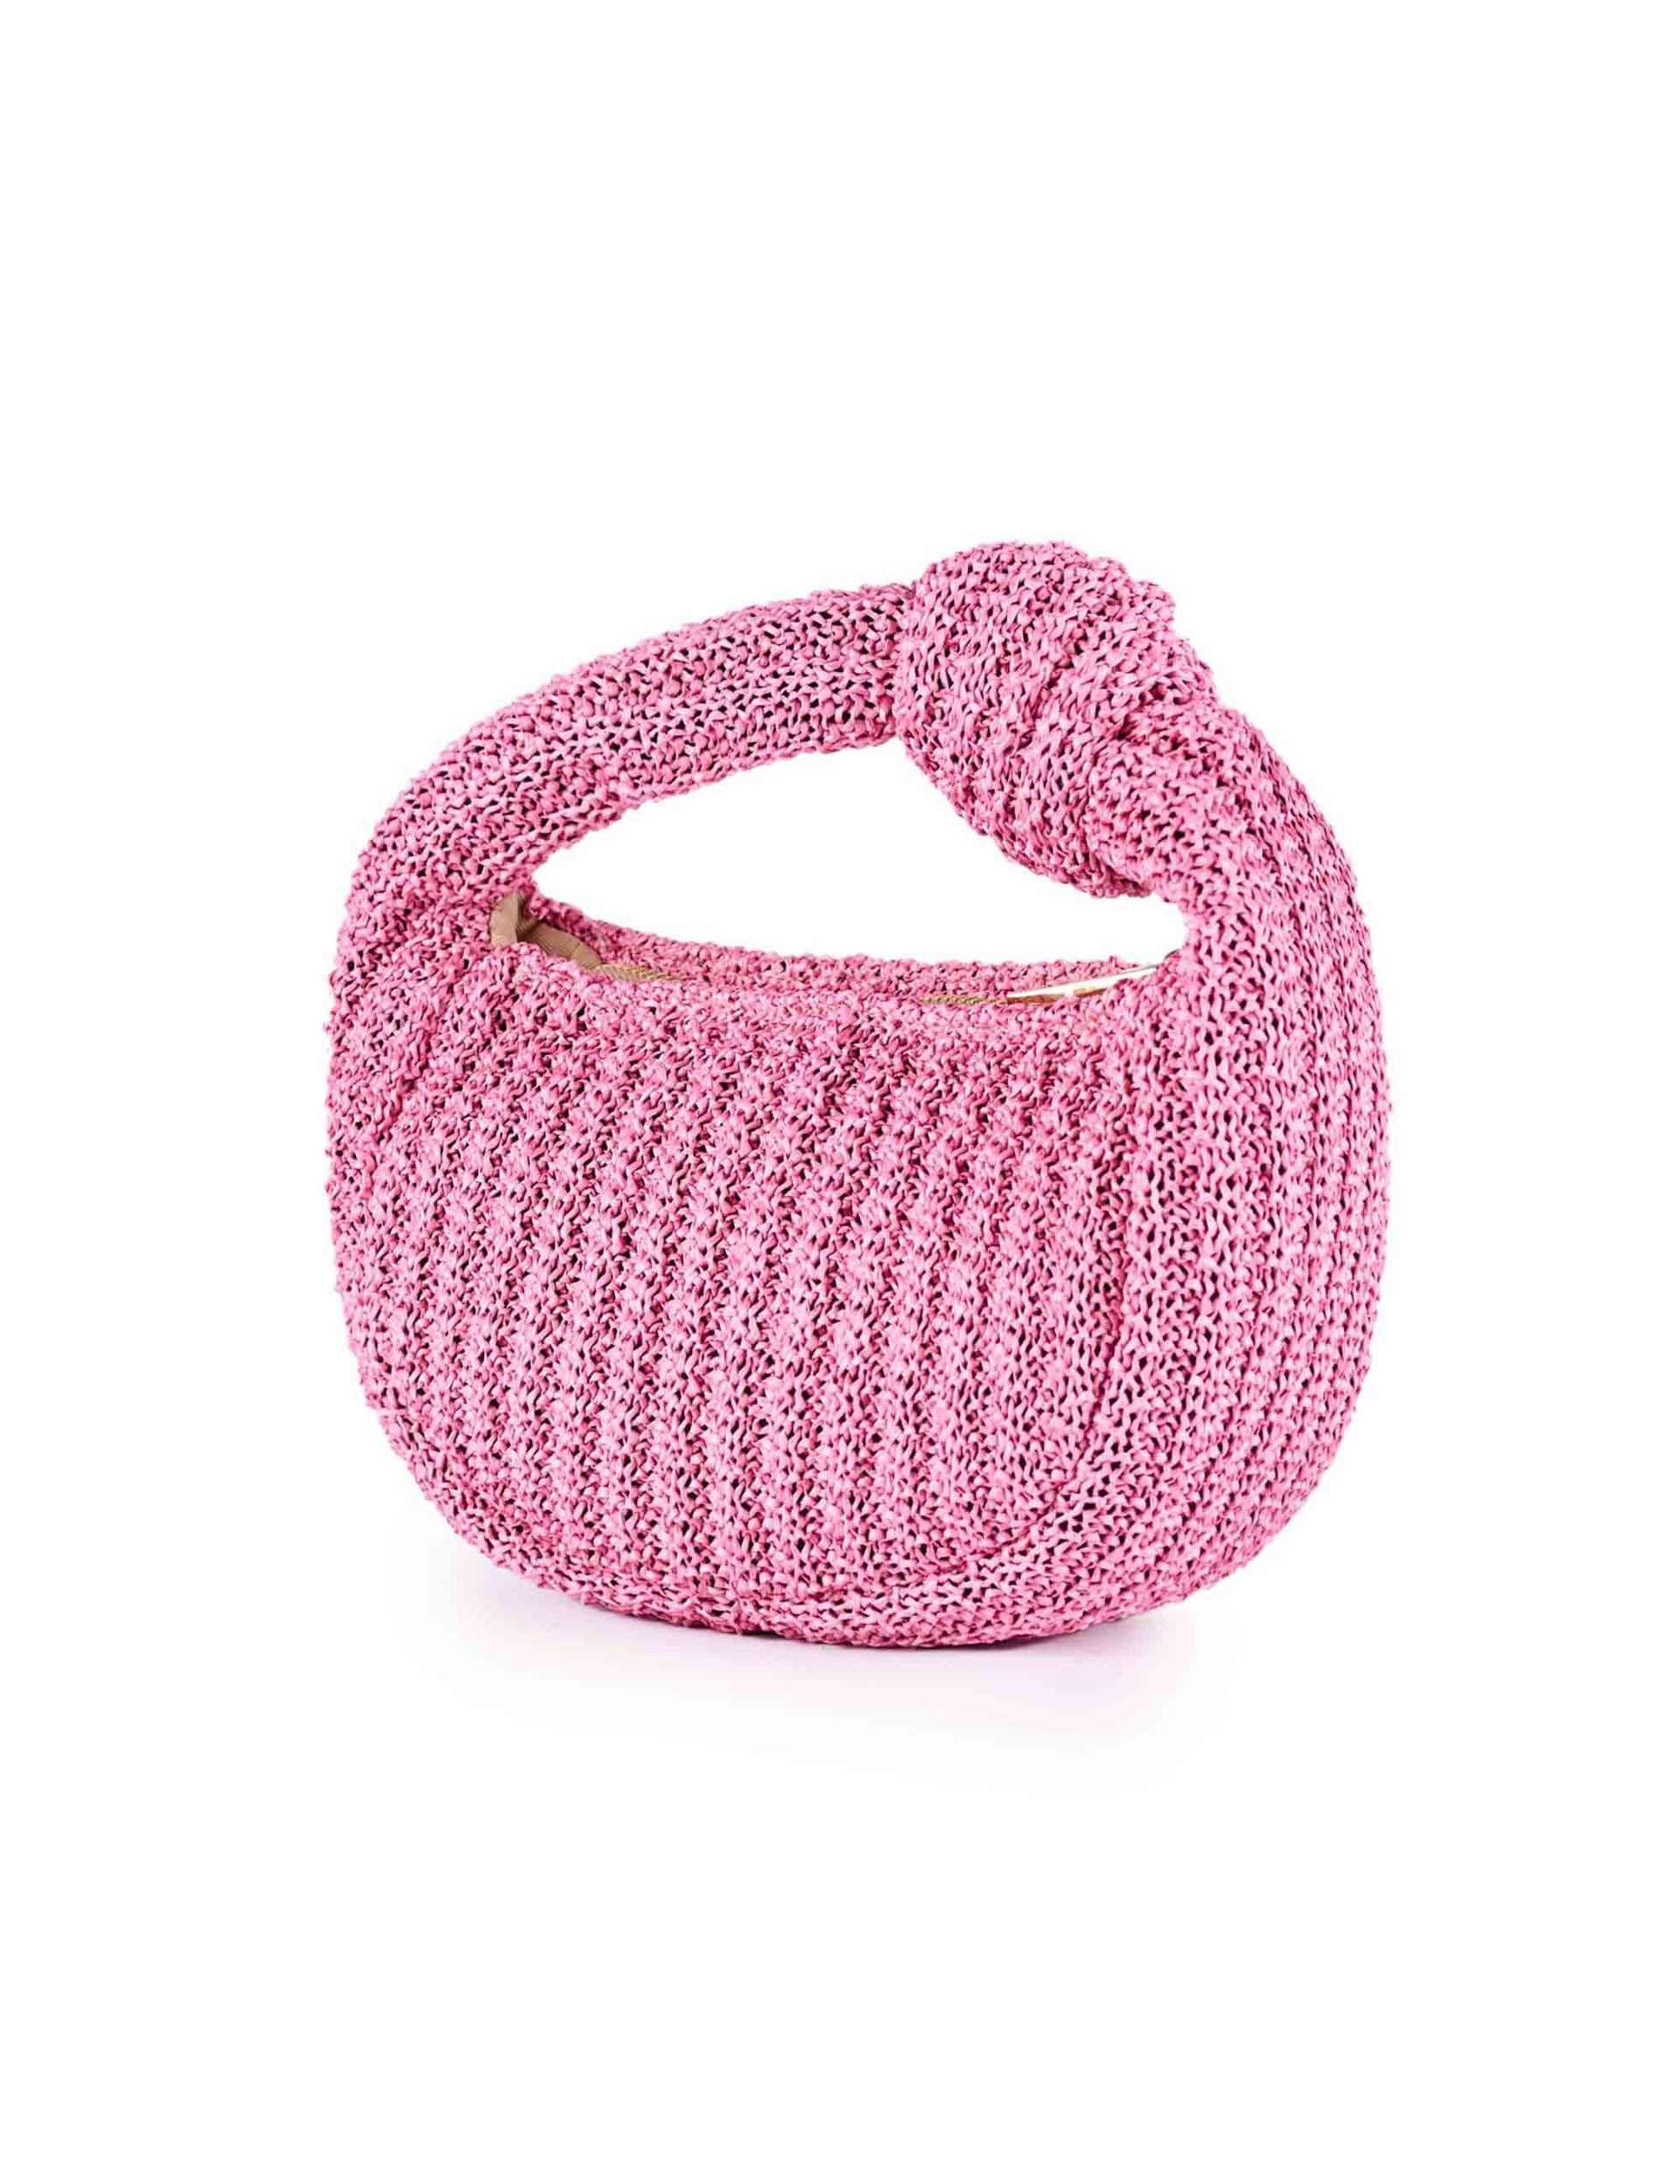 Borse a mano donna in rafia crochet rosa